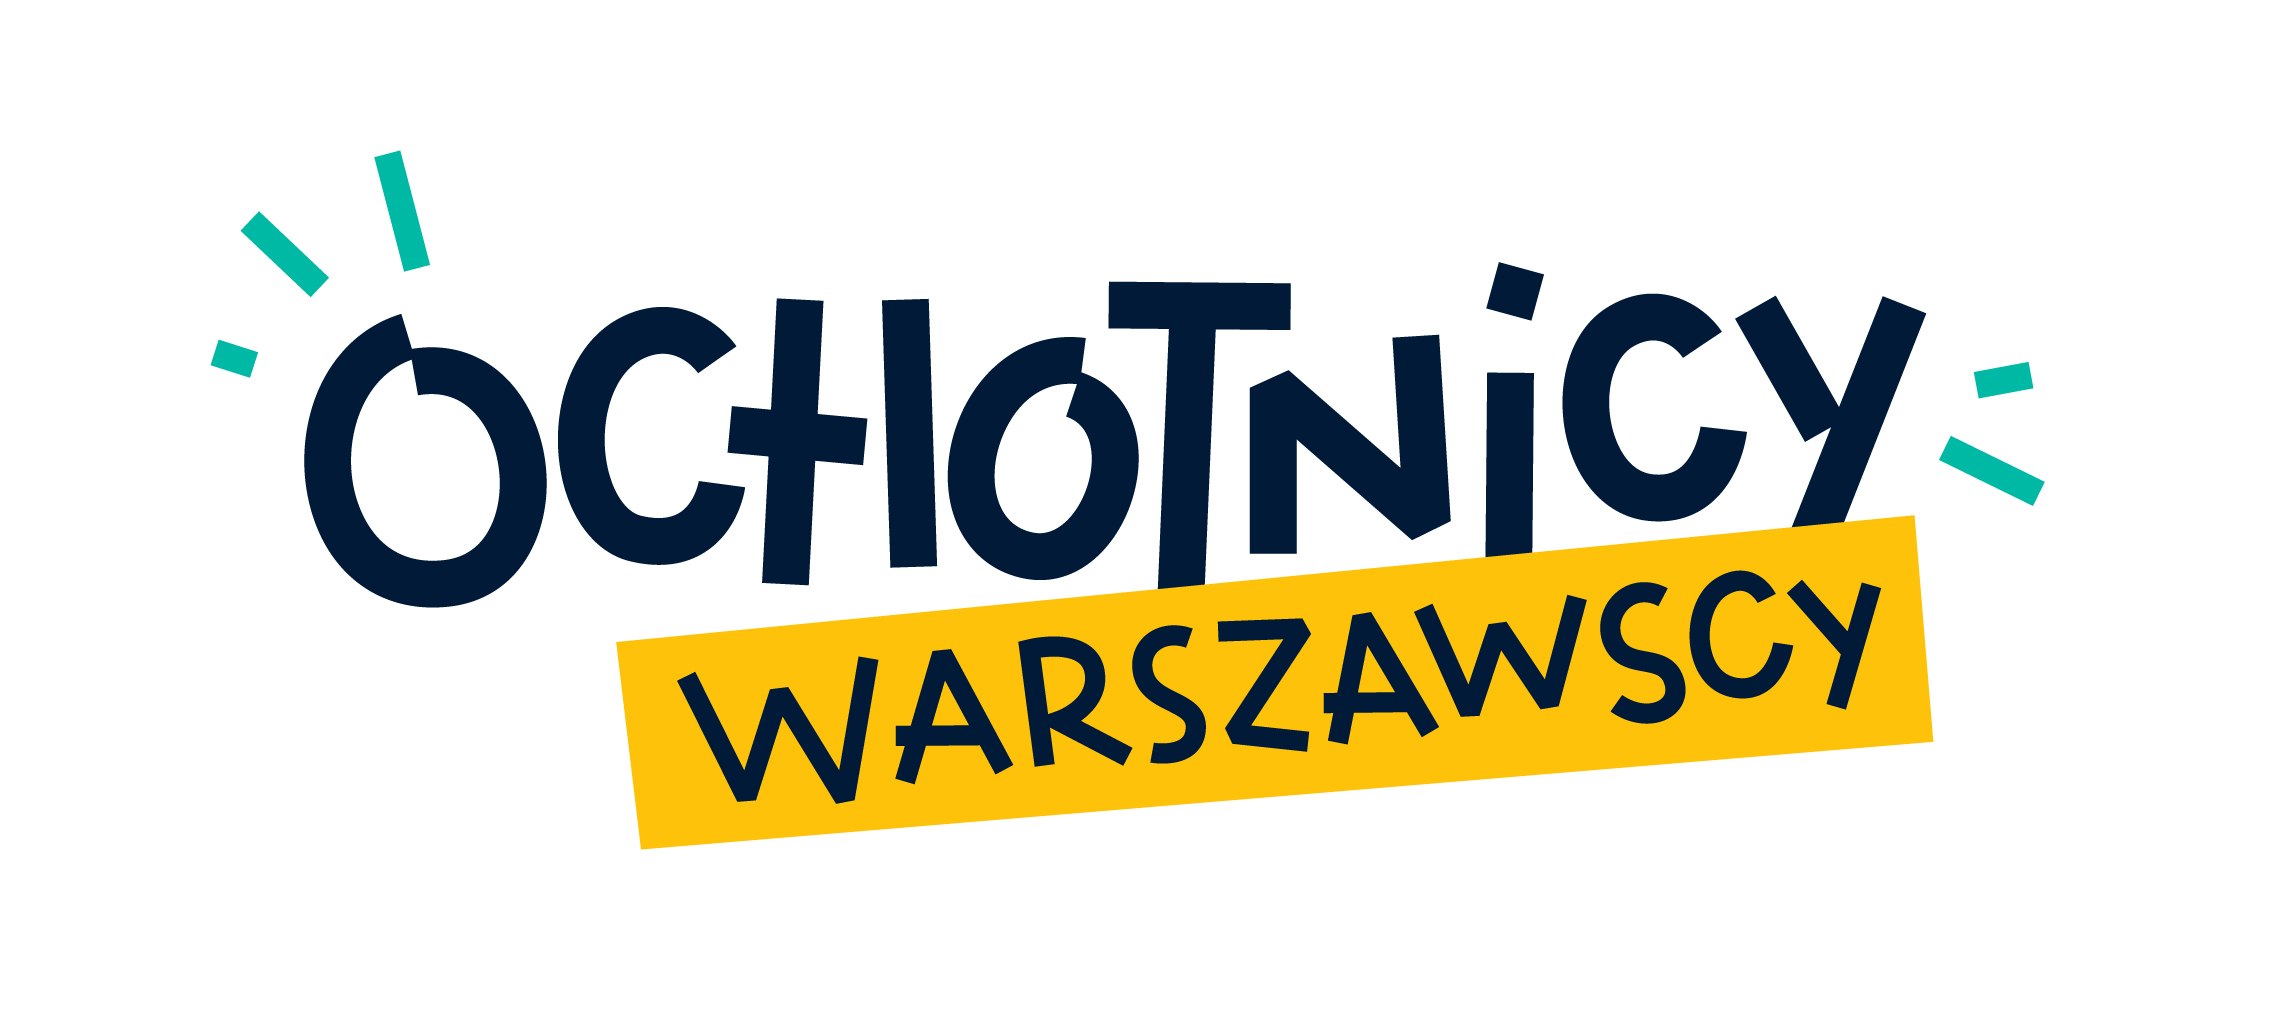 Logo projektu "Ochotnicy warszawscy" - graficzny napis